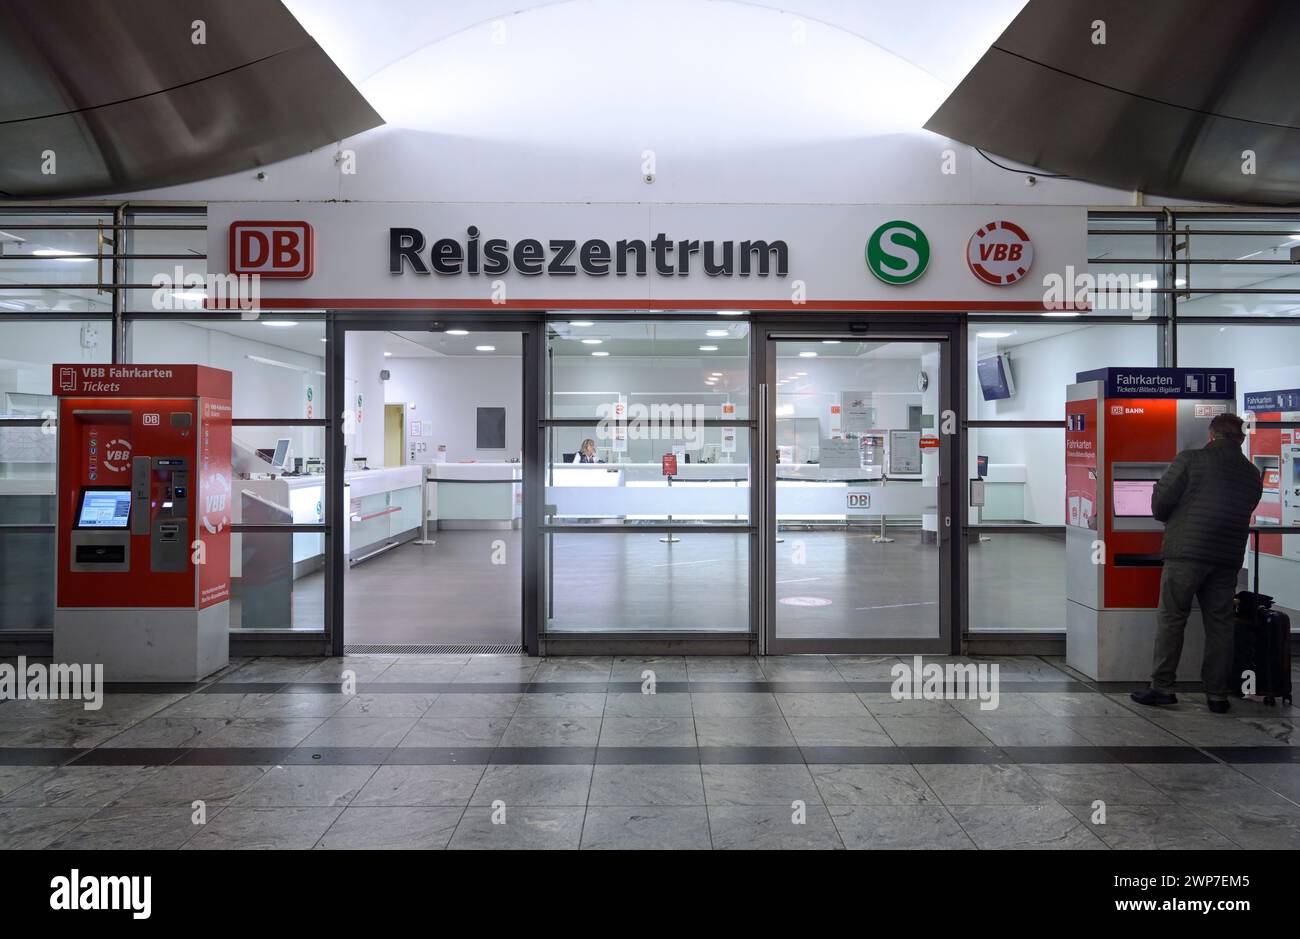 Reisezentrum Deutsche Bahn, Bahnhof Spandau, Berlin, Deutschland Banque D'Images